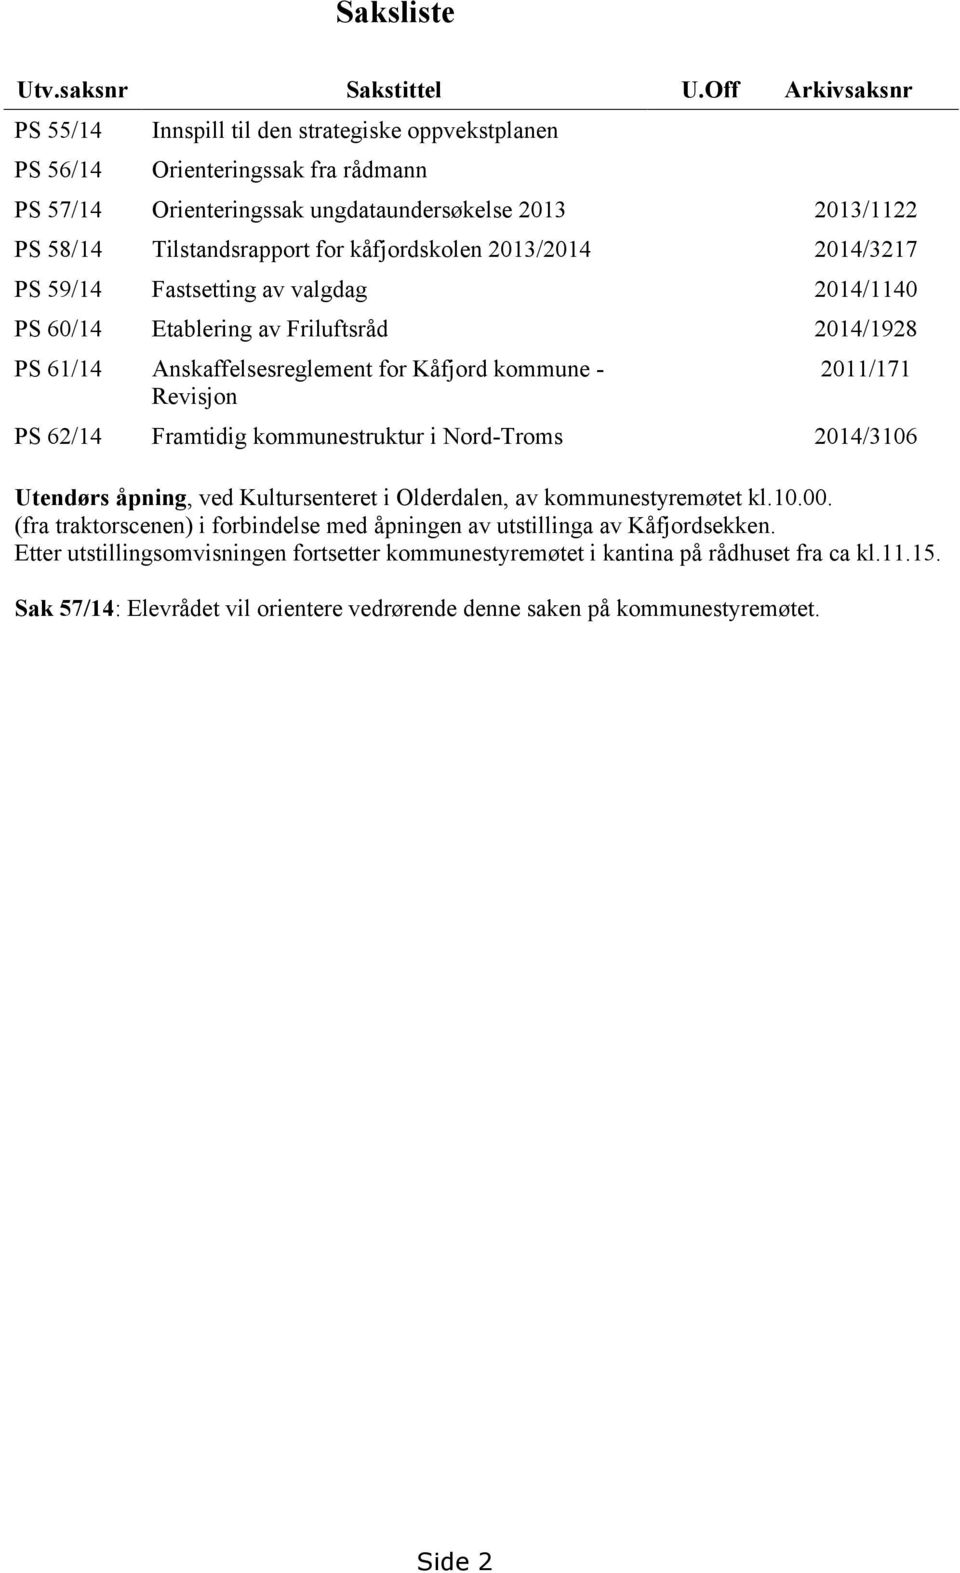 kåfjordskolen 2013/2014 2014/3217 PS 59/14 Fastsetting av valgdag 2014/1140 PS 60/14 Etablering av Friluftsråd 2014/1928 PS 61/14 Anskaffelsesreglement for Kåfjord kommune - Revisjon 2011/171 PS